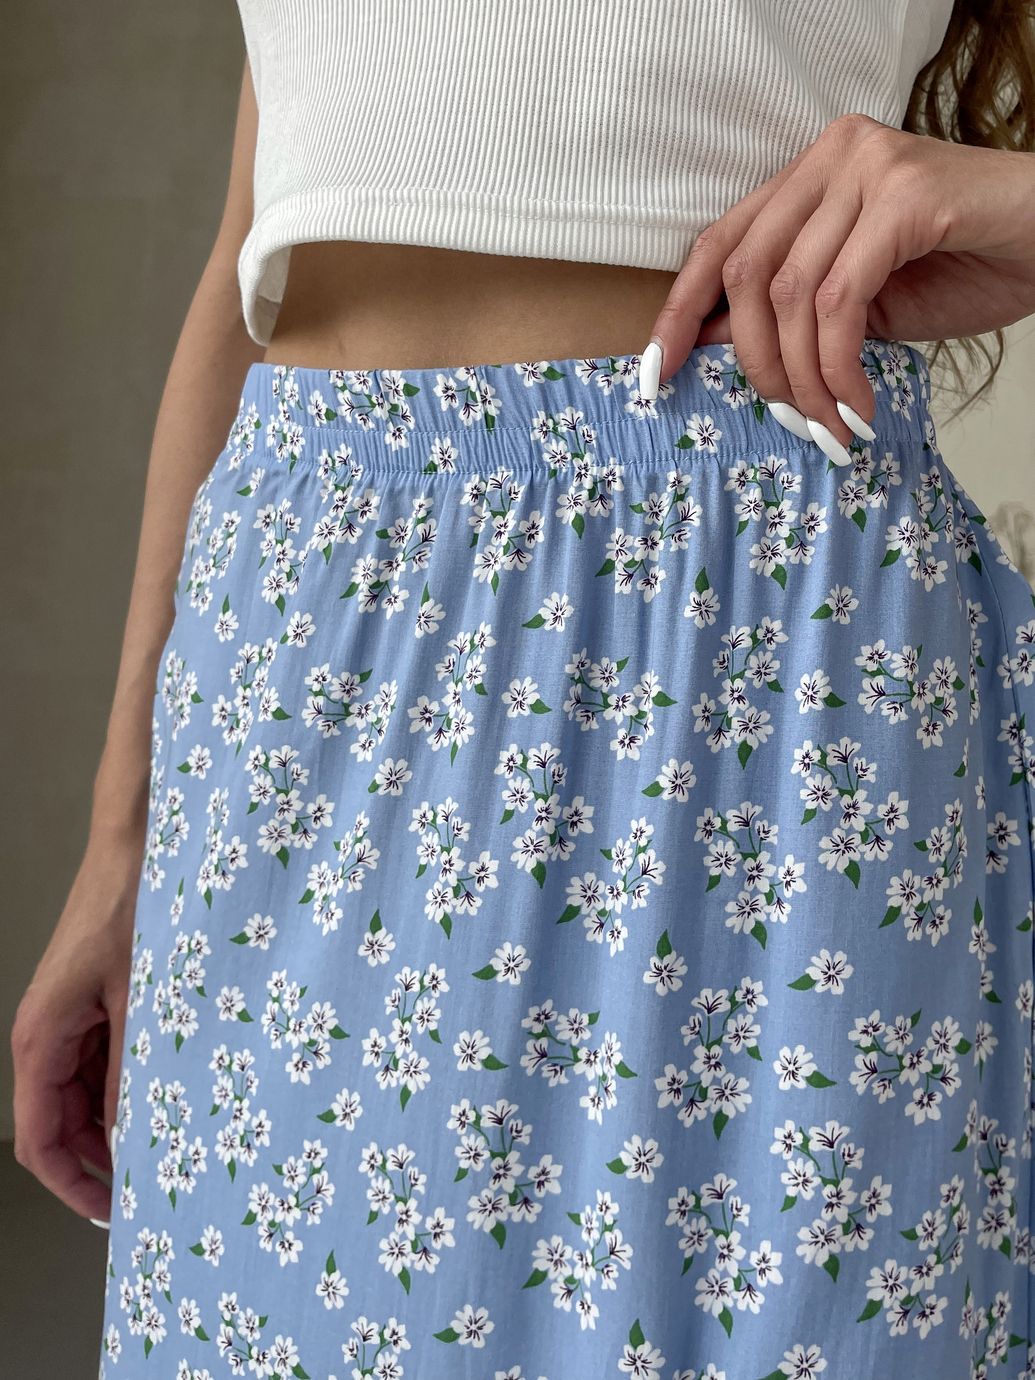 Купить Длинная женская юбка ниже колена с размером в цветочек Merlini Равенна 400000124, размер 42-44 (S-M) в интернет-магазине